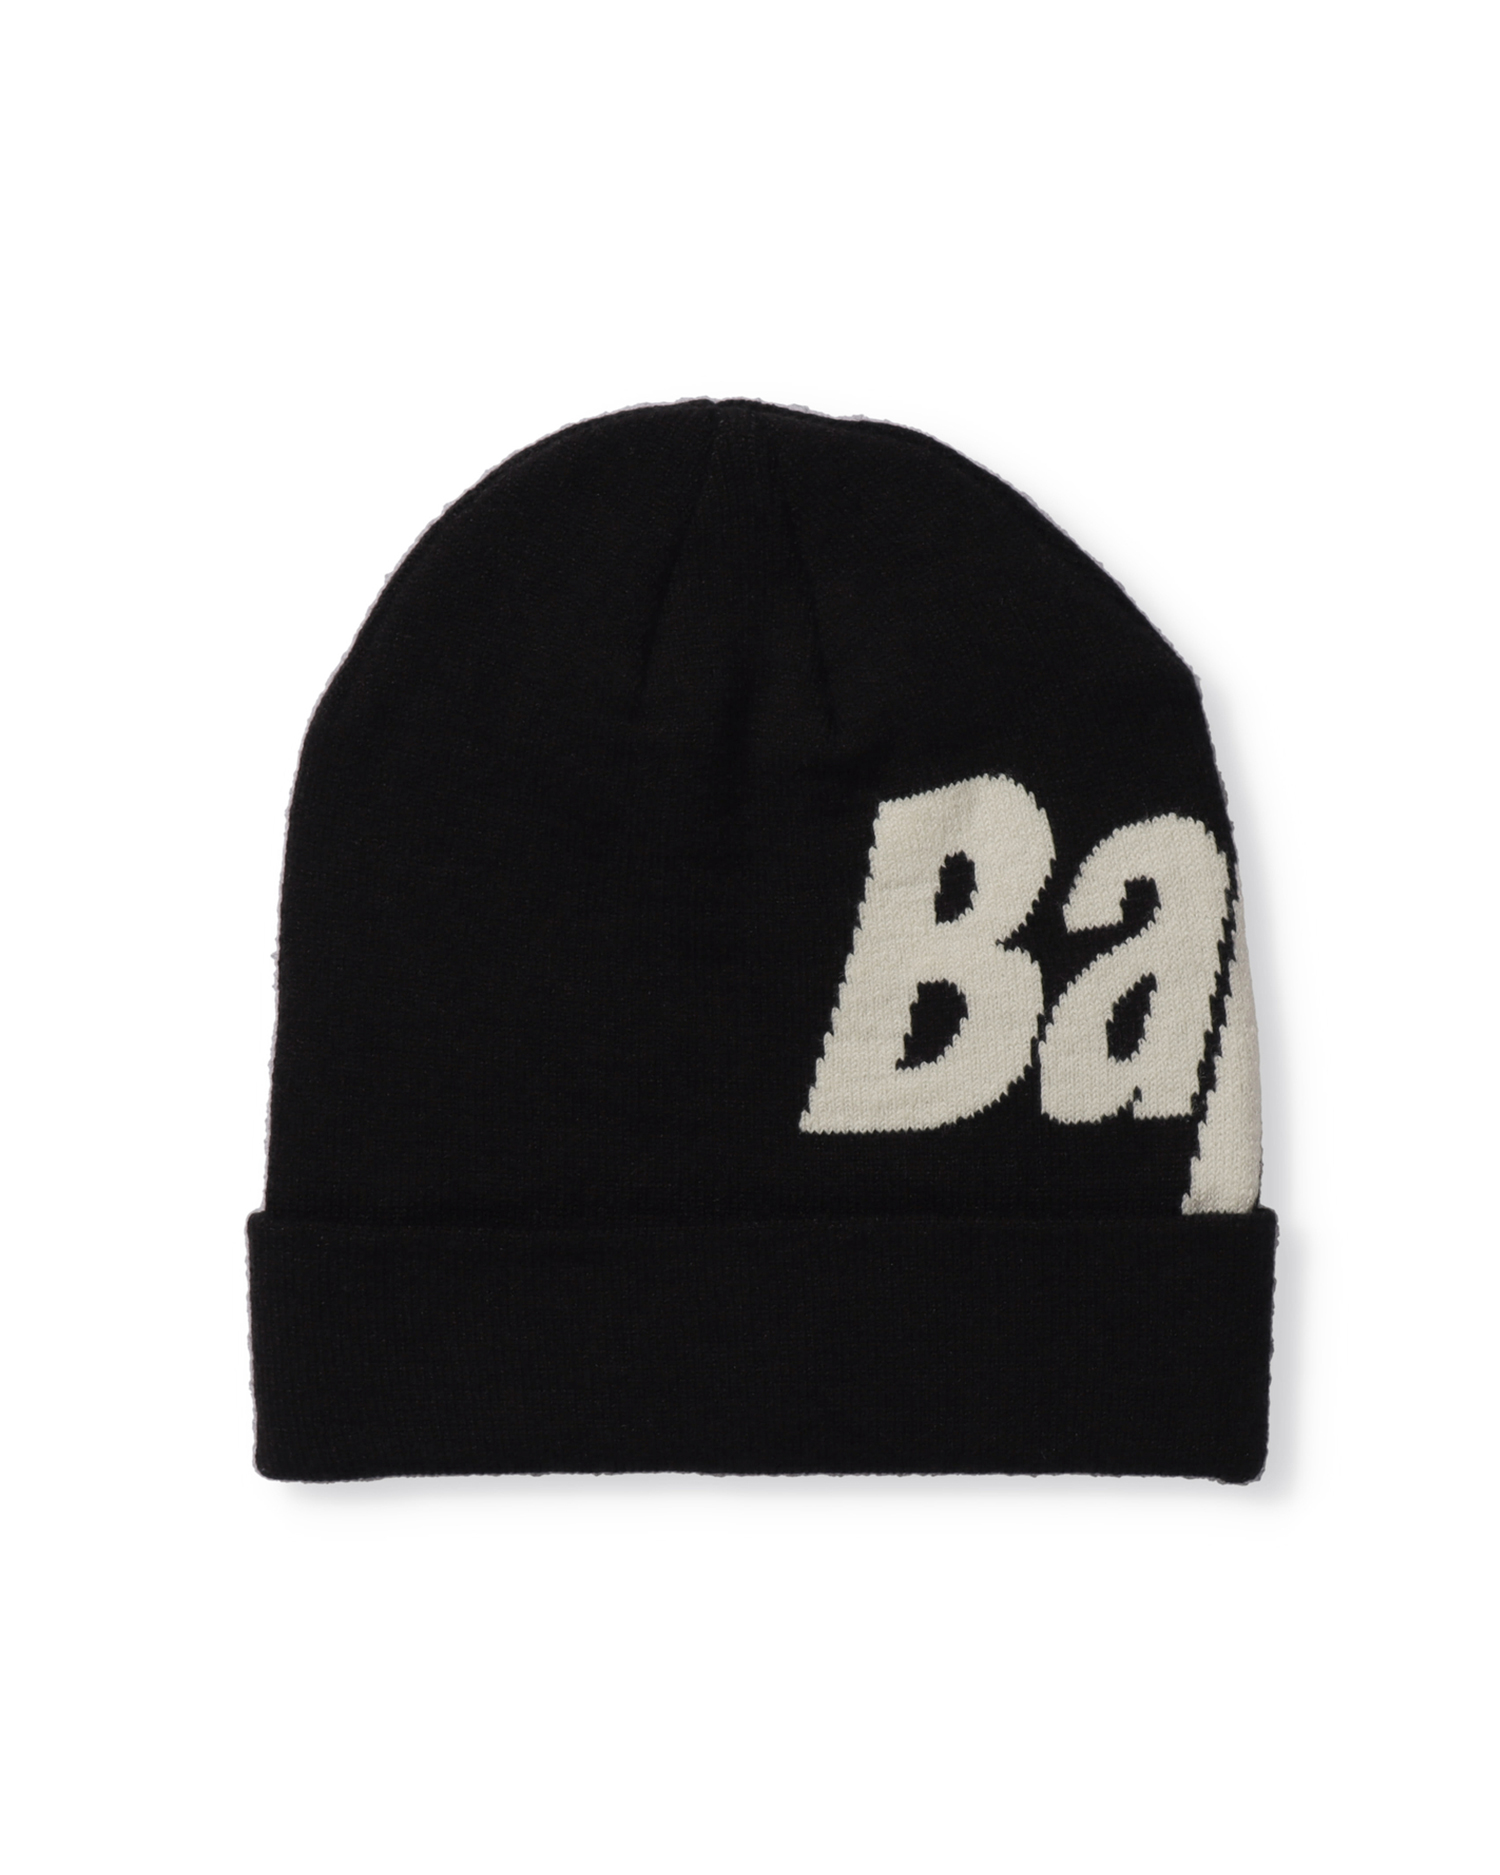 Shop Bape Knit Cap Online | BAPE